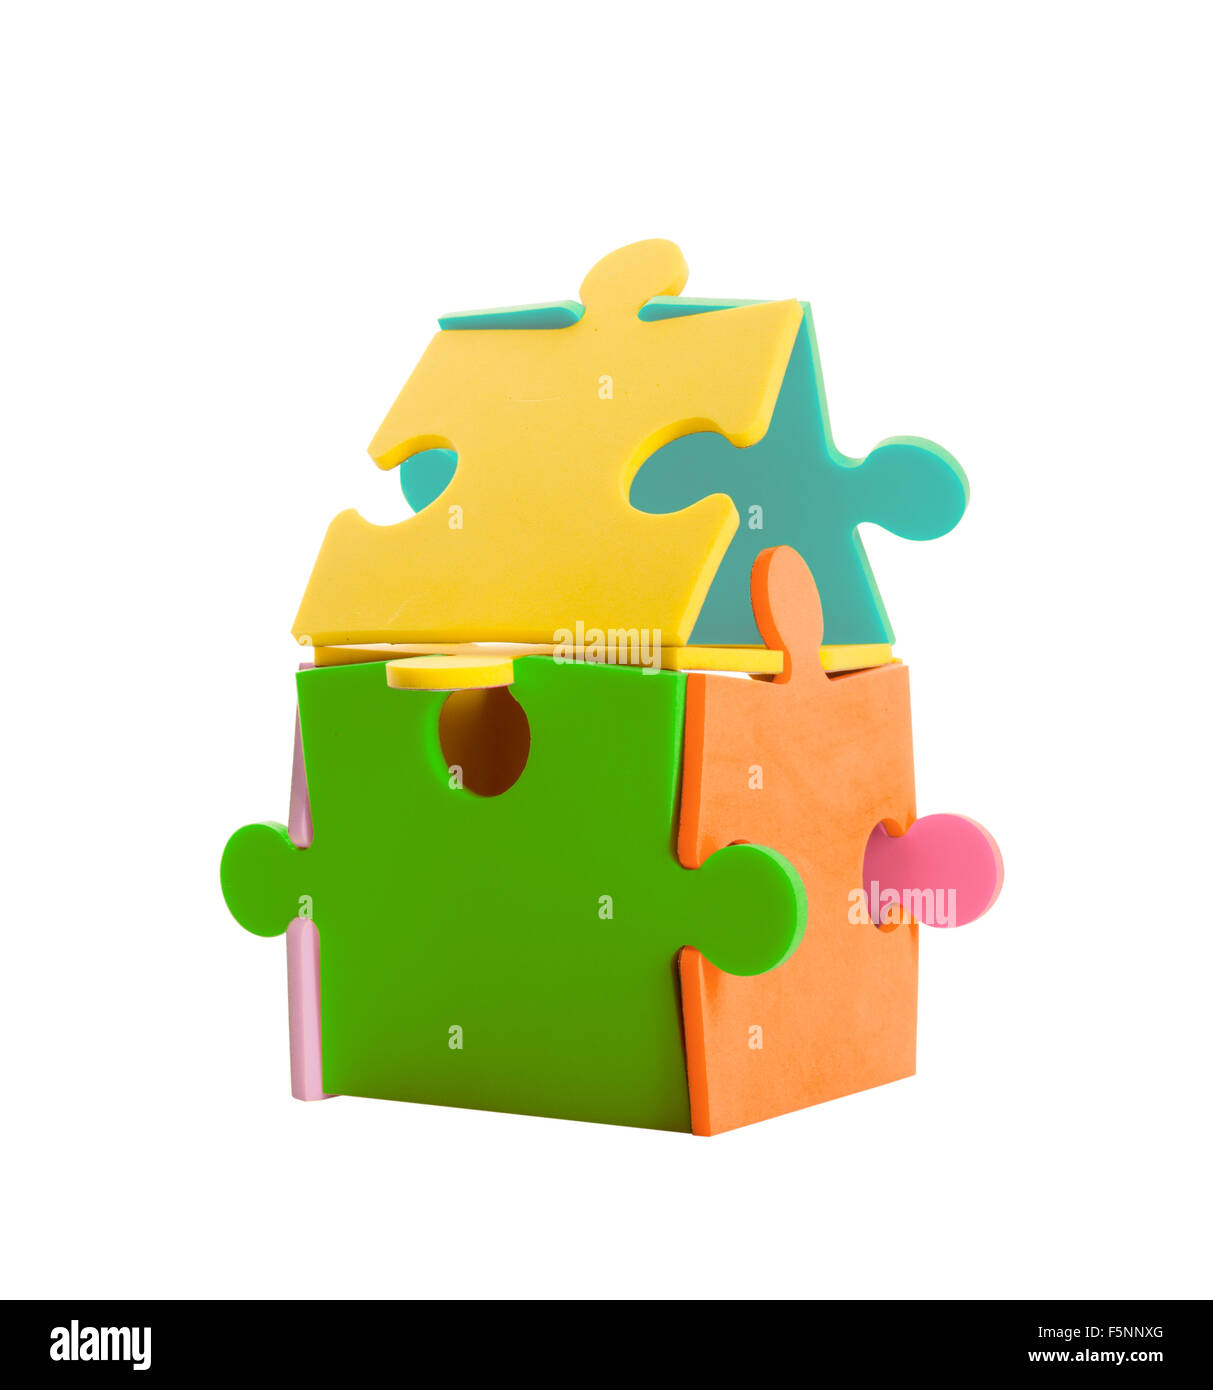 Jigsaw Puzzle pieces faire une maison colorée. Isolated on white Banque D'Images